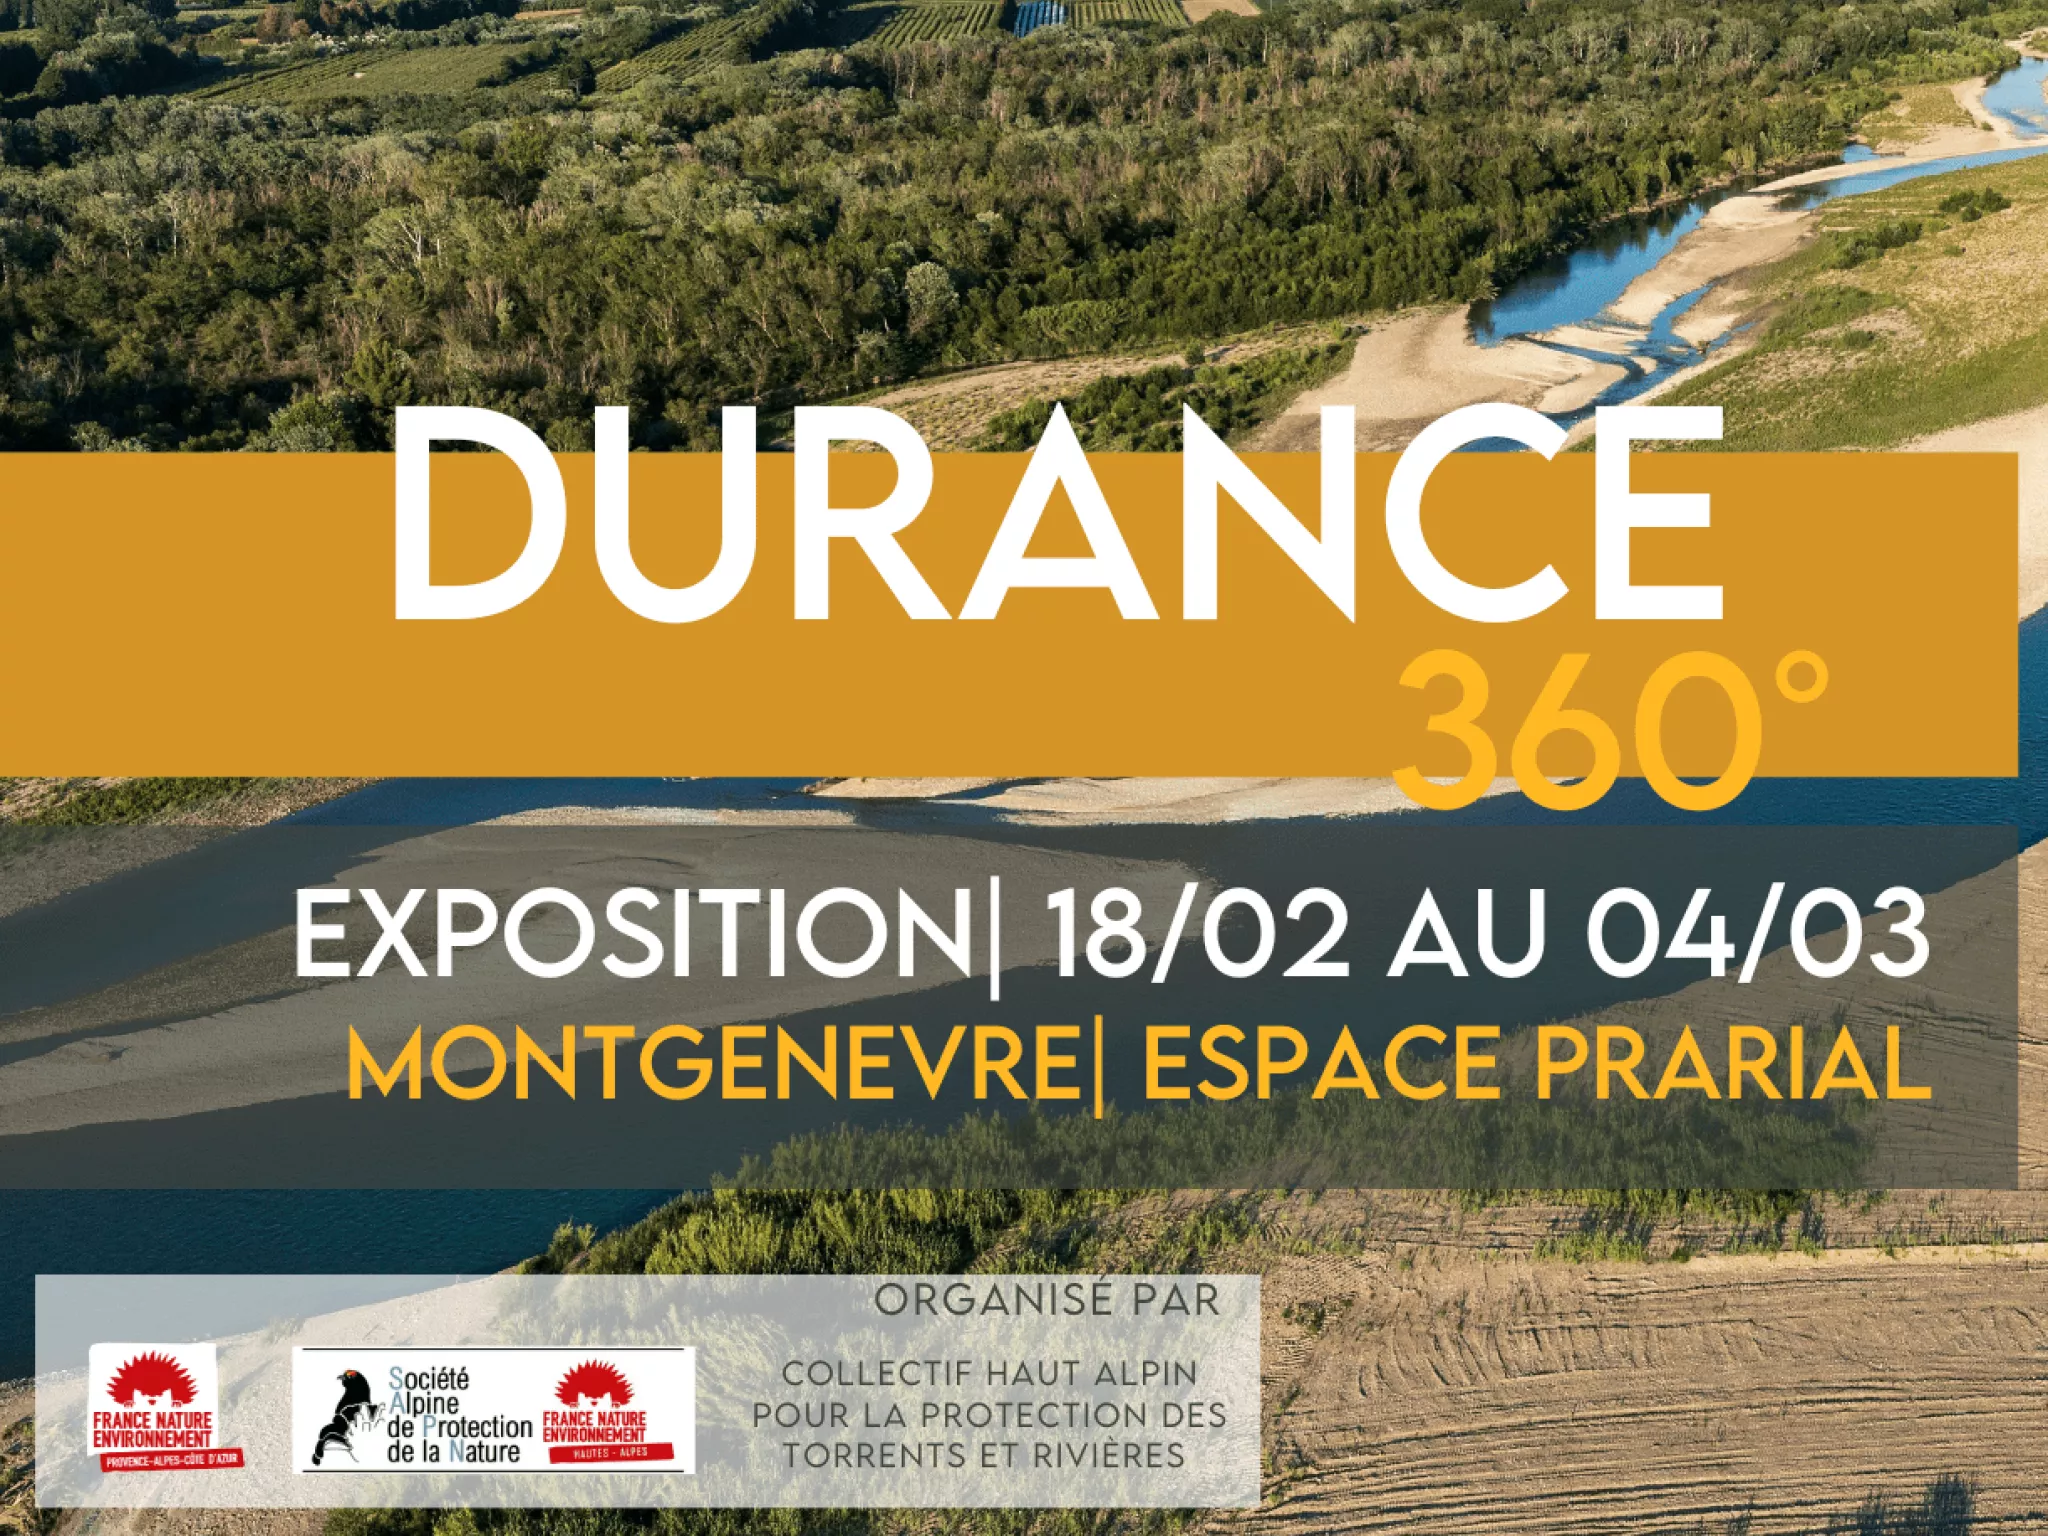 Vue aérienne de la Plaine de la Durance et info pratiques relatives à l'expo.